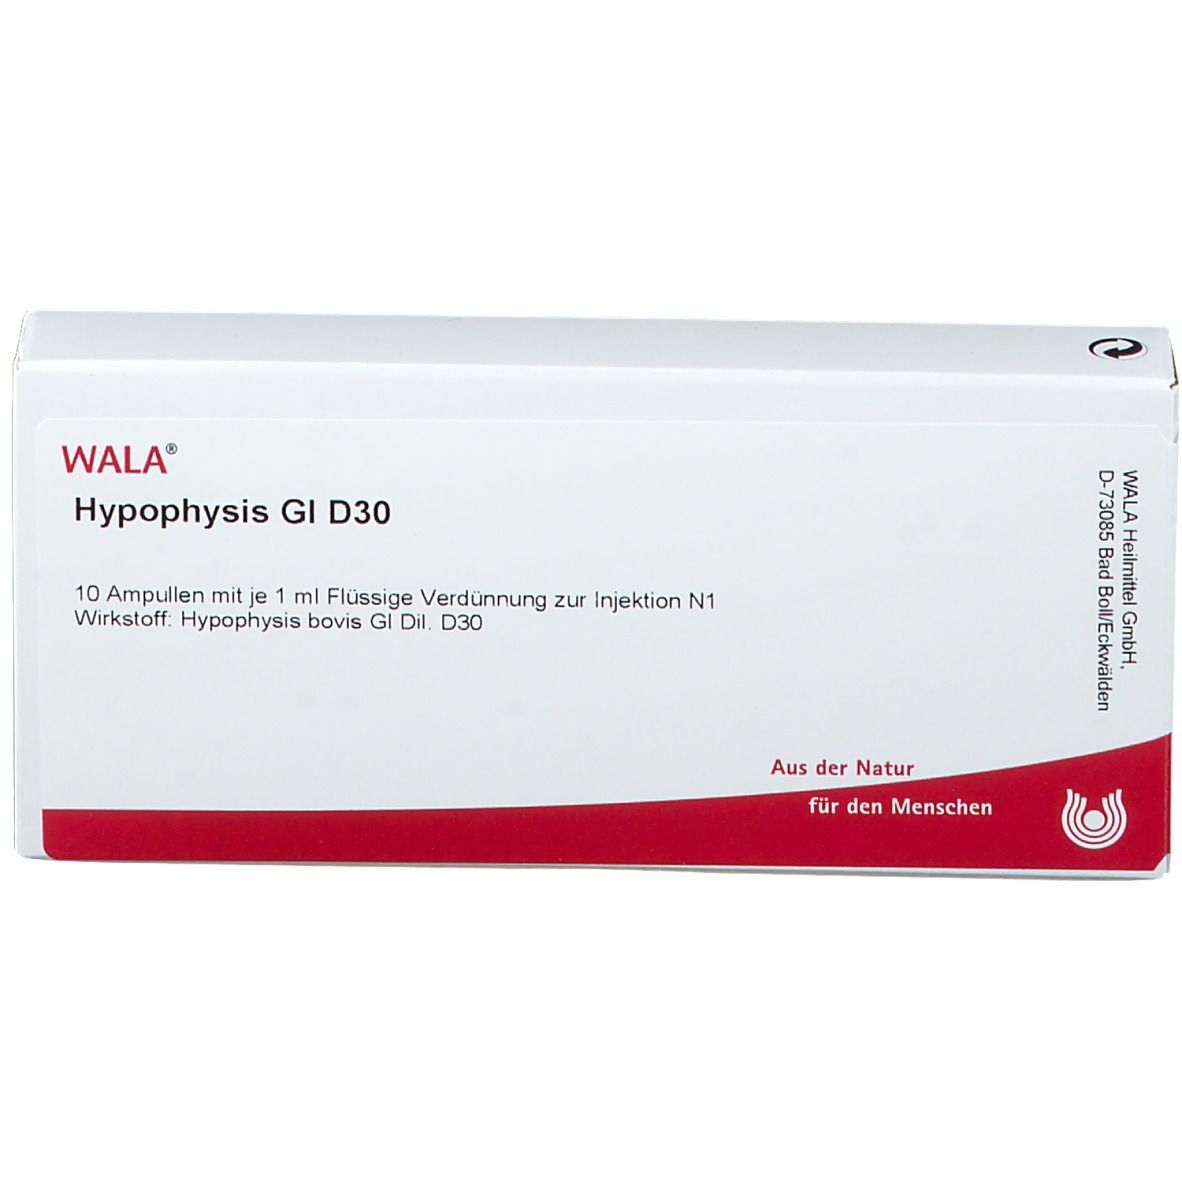 WALA® Hypophysis Gl D 30 Amp.